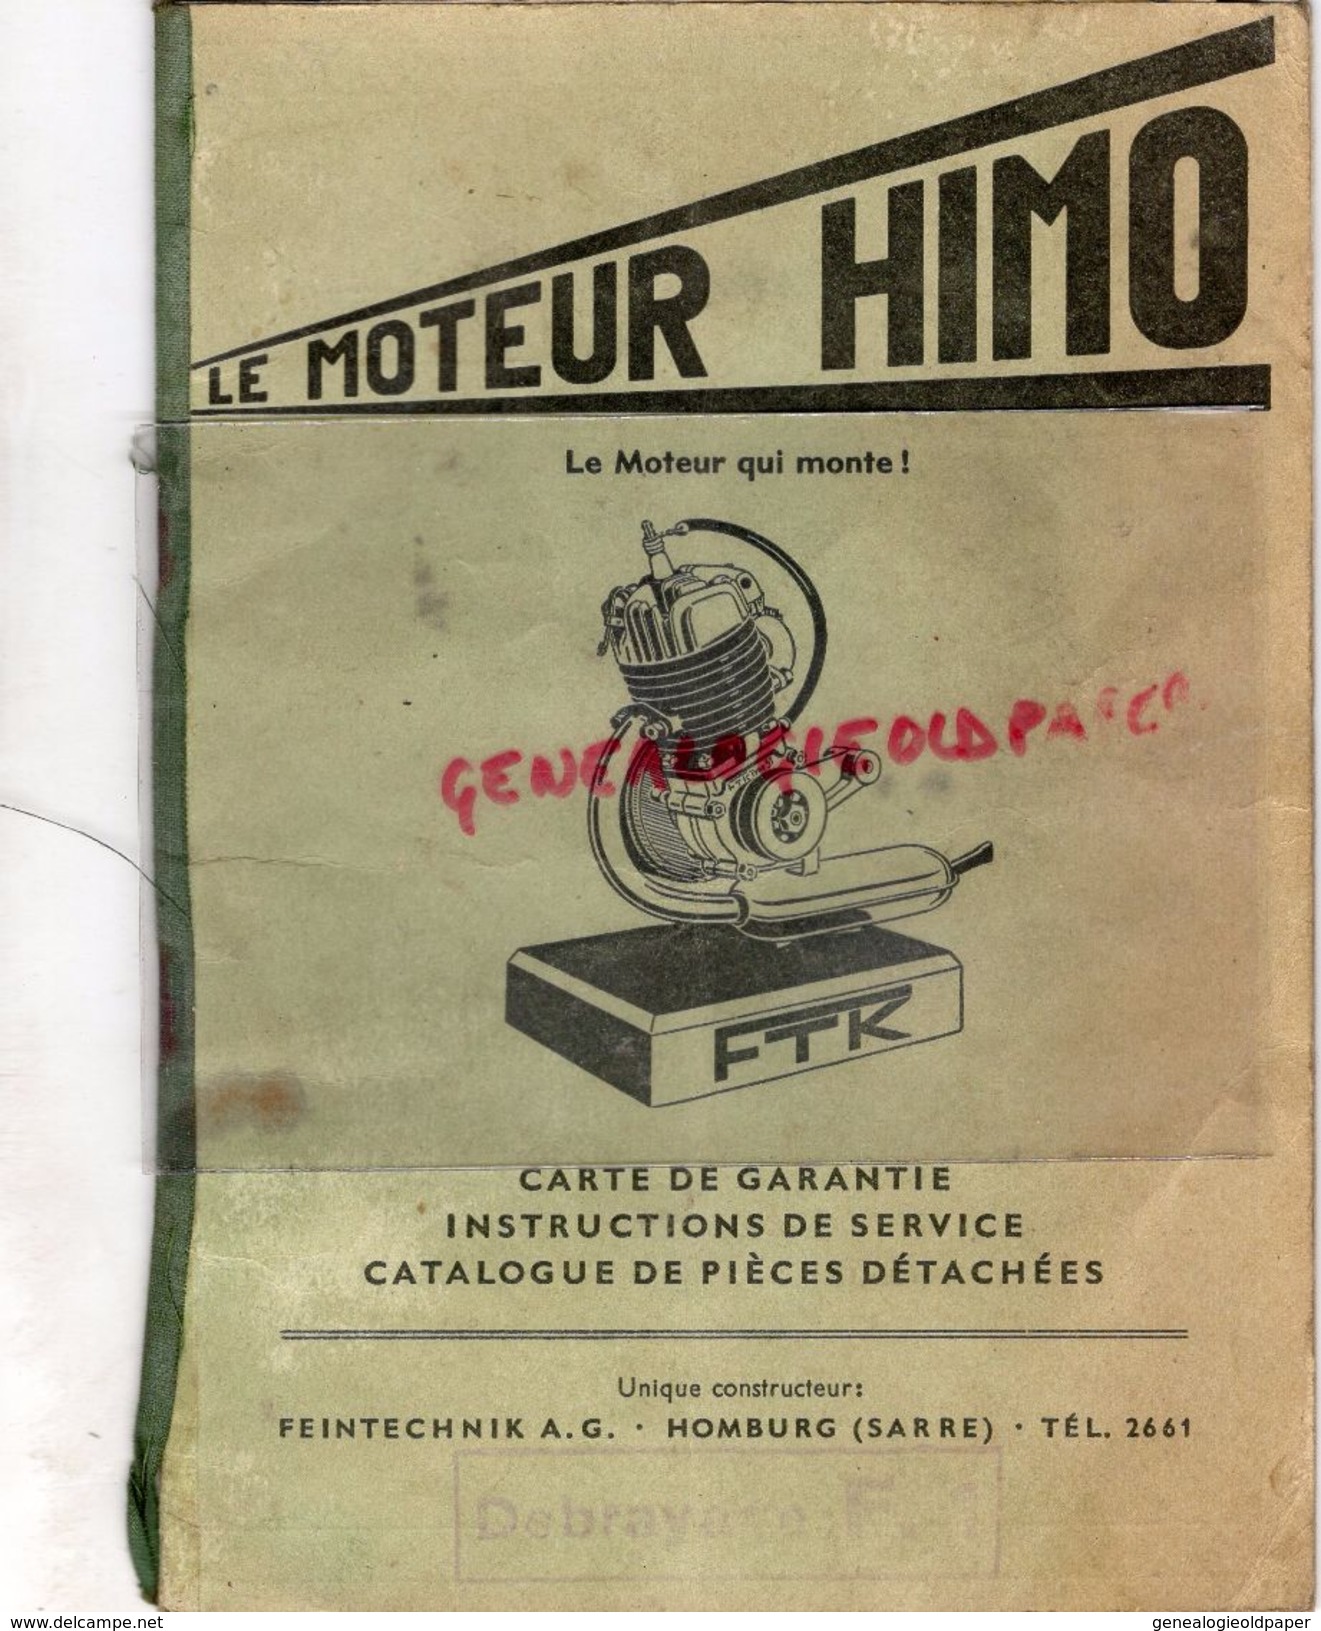 ALLEMAGNE- LE MOTEUR HIMO TYPE 51- FTK- FEINTECHNIK A.G. HOMBURG-SARRE- 1953- - Automovilismo